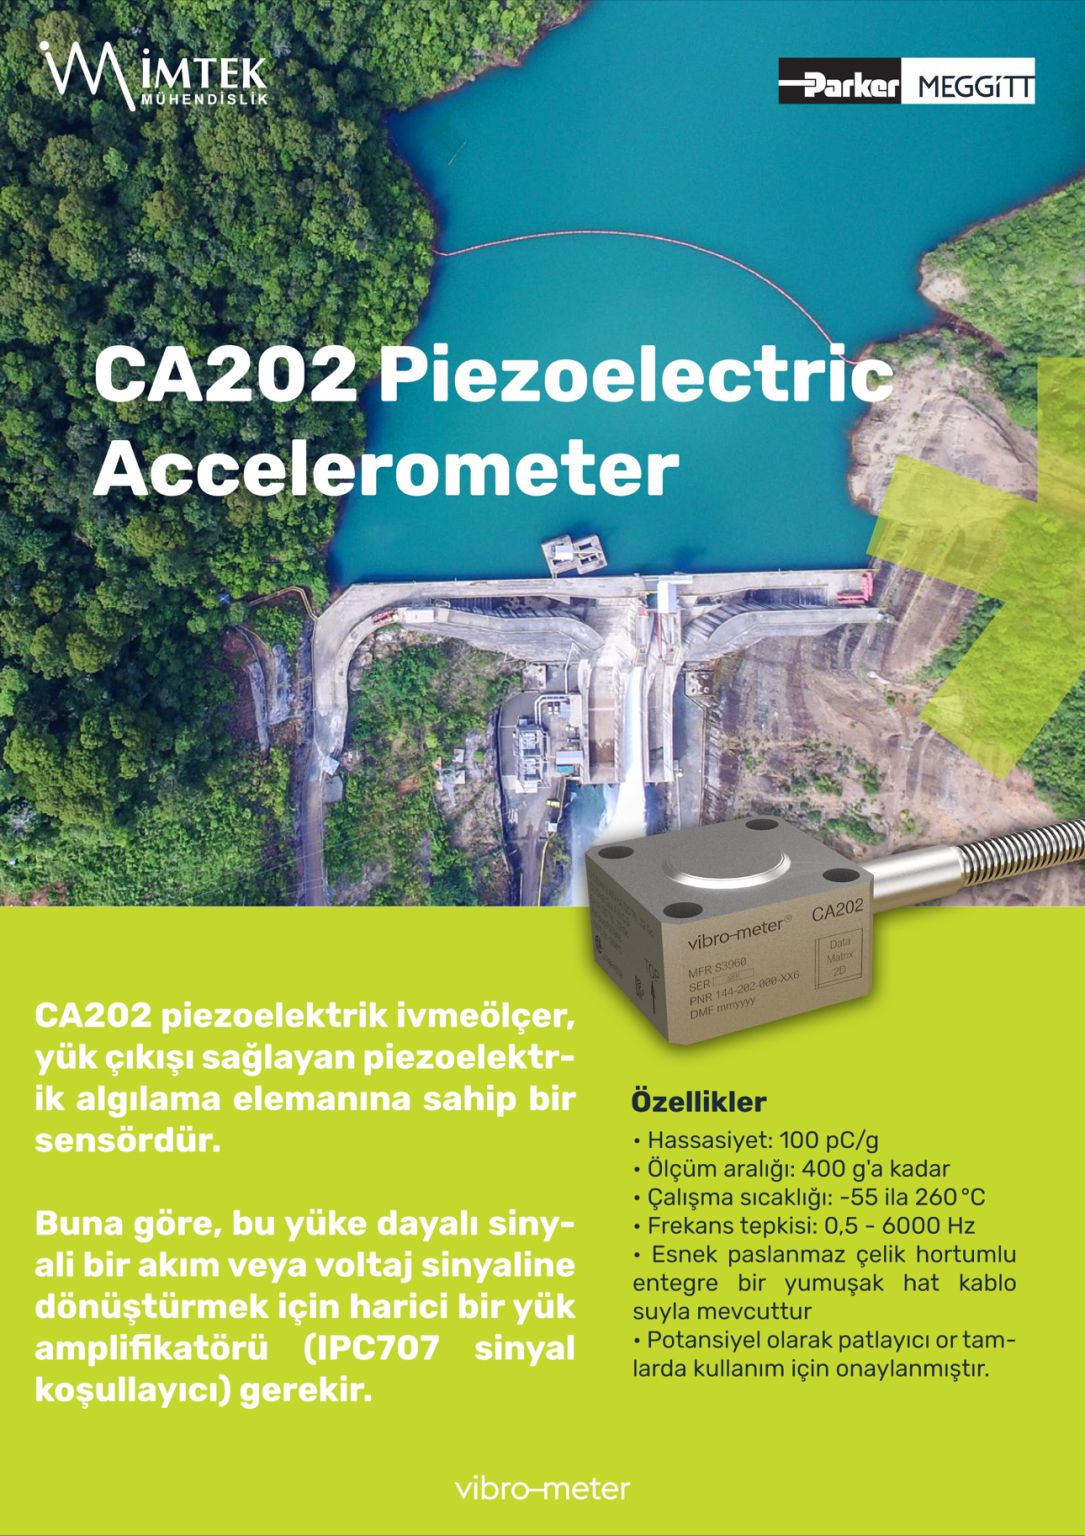 CA202 piezoelectric accelerometer